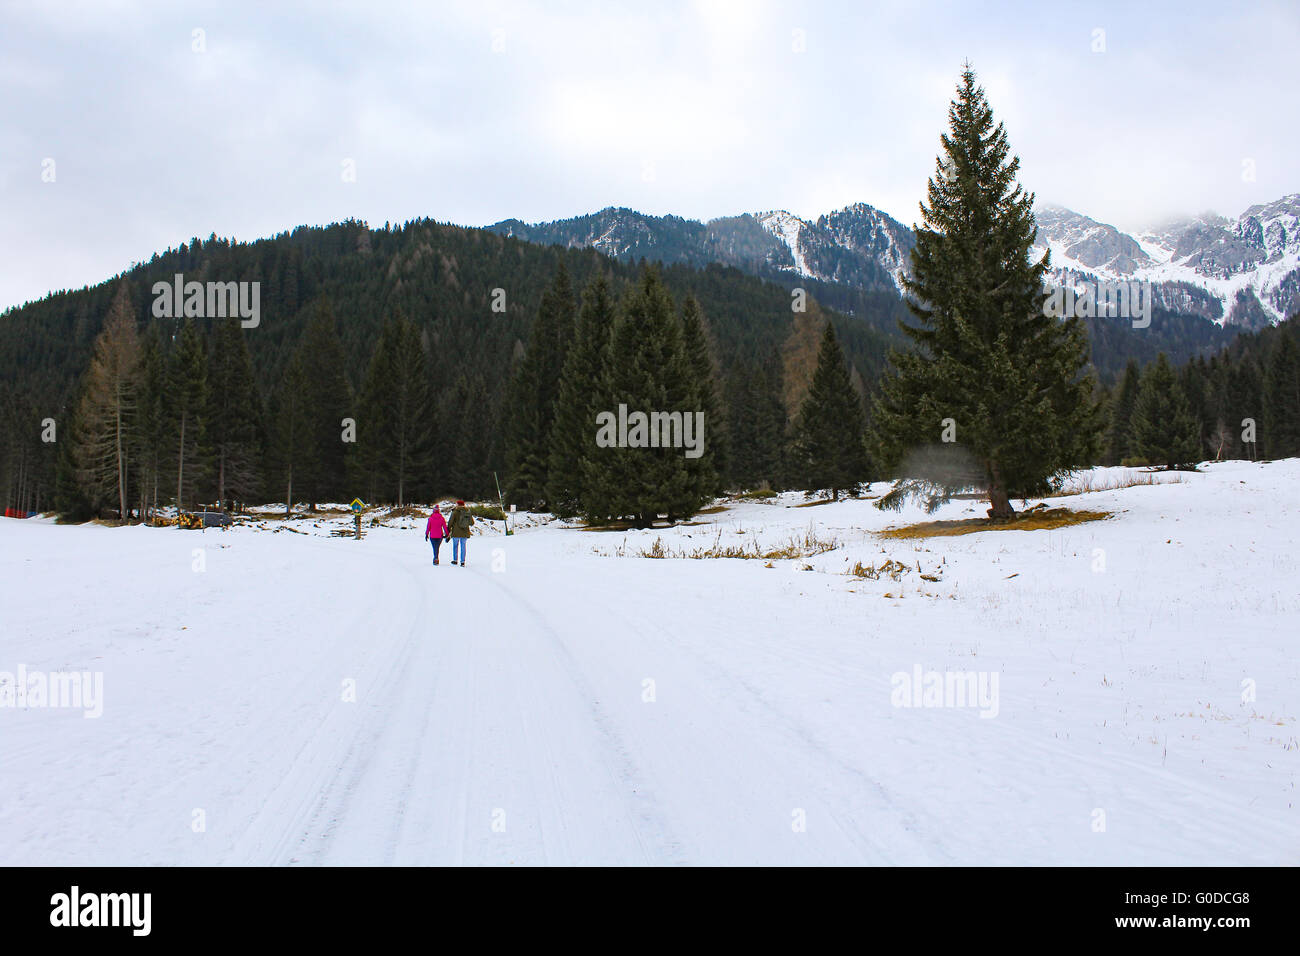 Un couple marche dans les Dolomites italiennes, leurs manteaux lumineux contraste avec le blanc de la neige. Banque D'Images